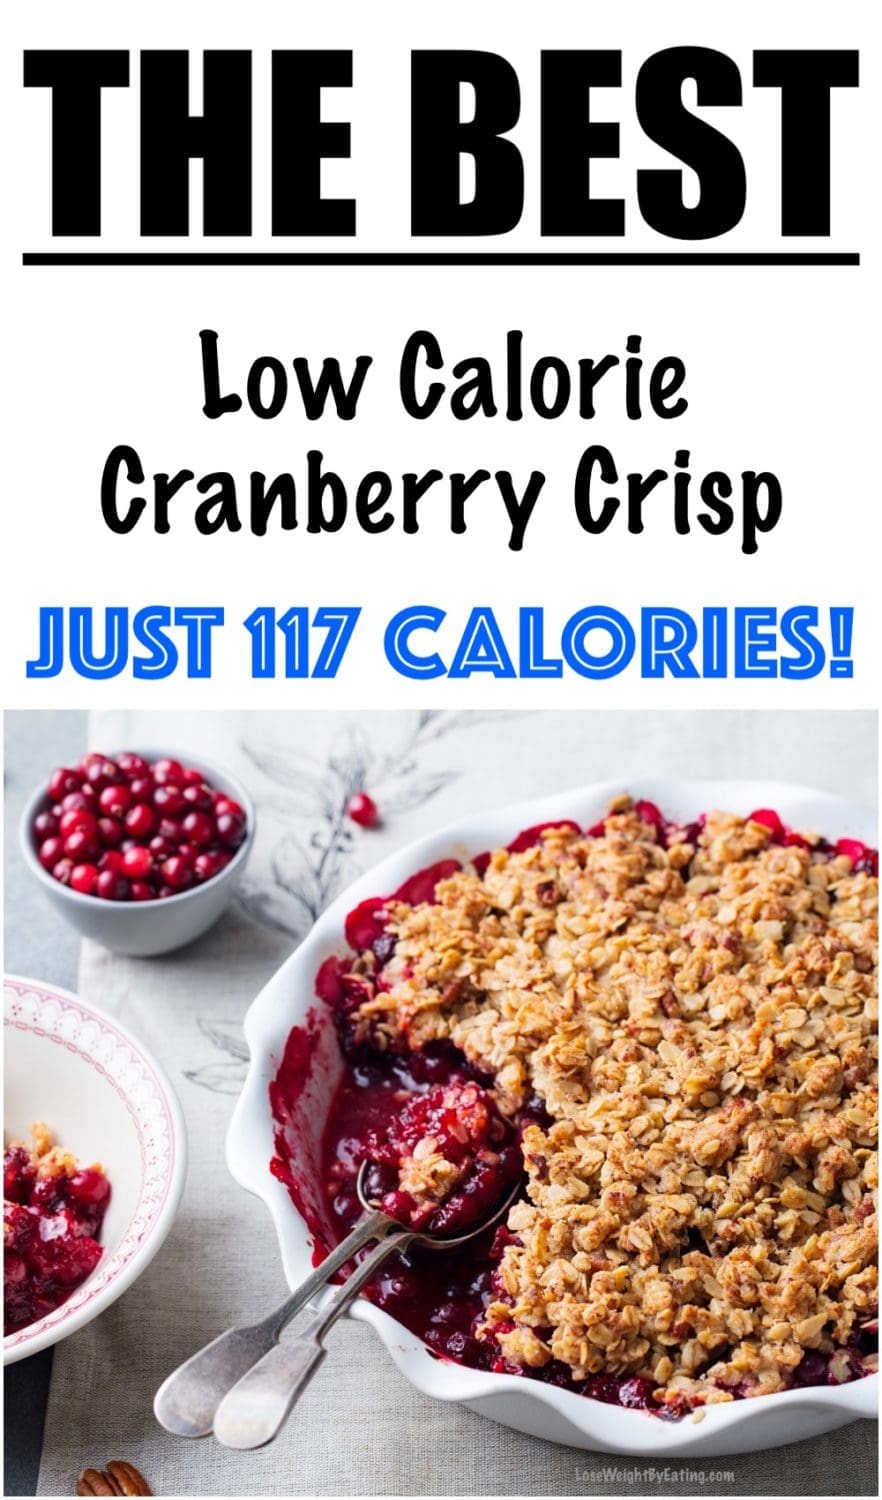 Low Calorie Cranberry Crisp